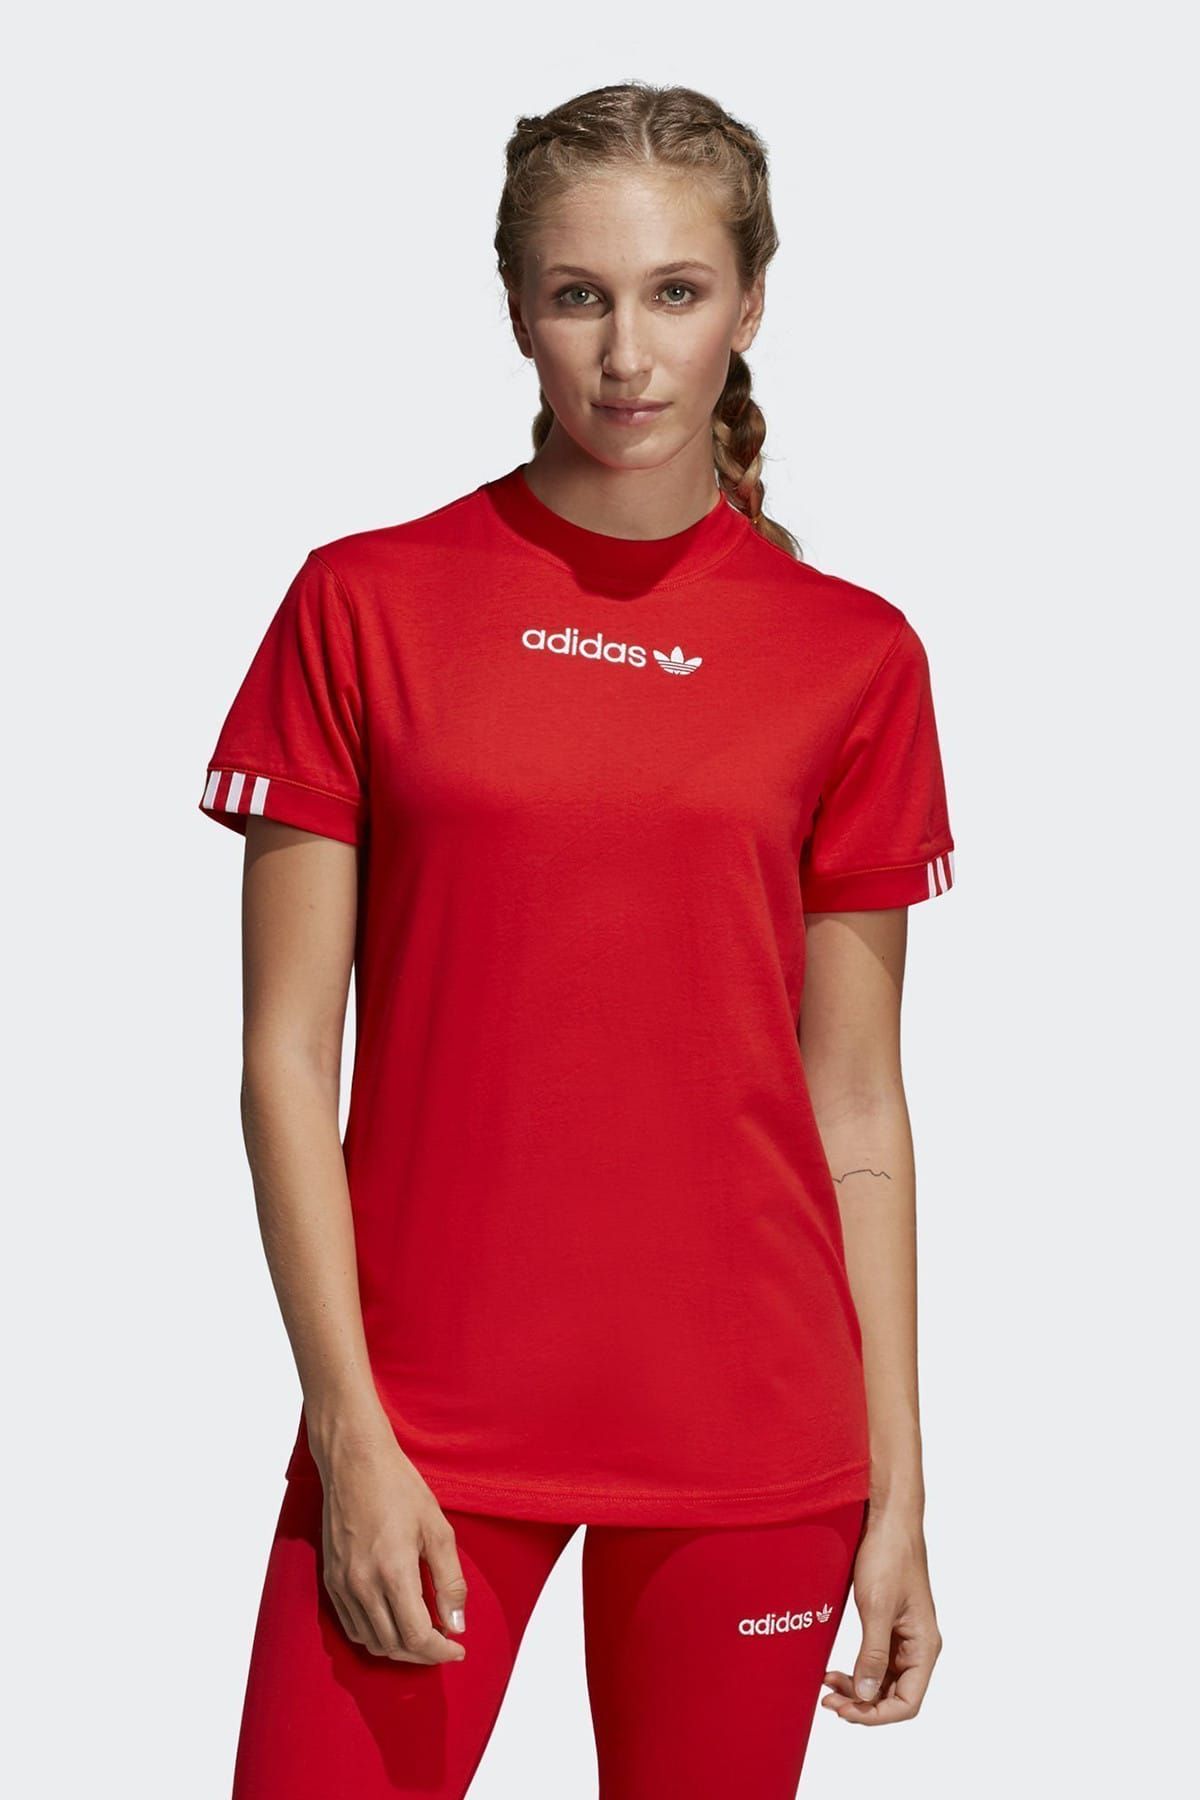 adidas Coeeze T SHIRT Kadın Tişört